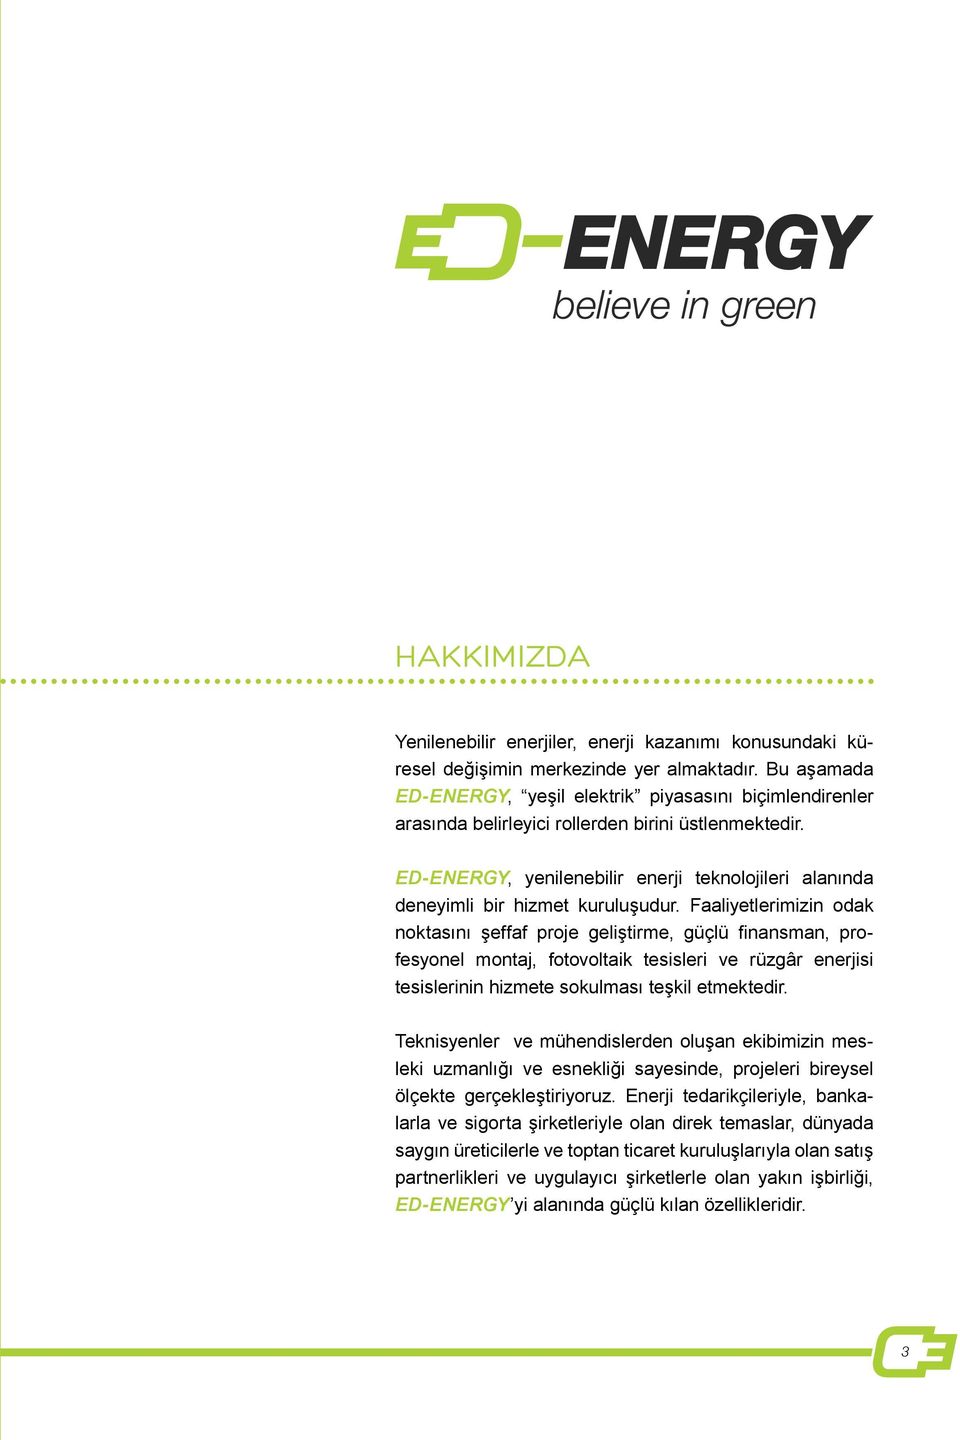 ED-ENERGY, yenilenebilir enerji teknolojileri alanında deneyimli bir hizmet kuruluşudur.